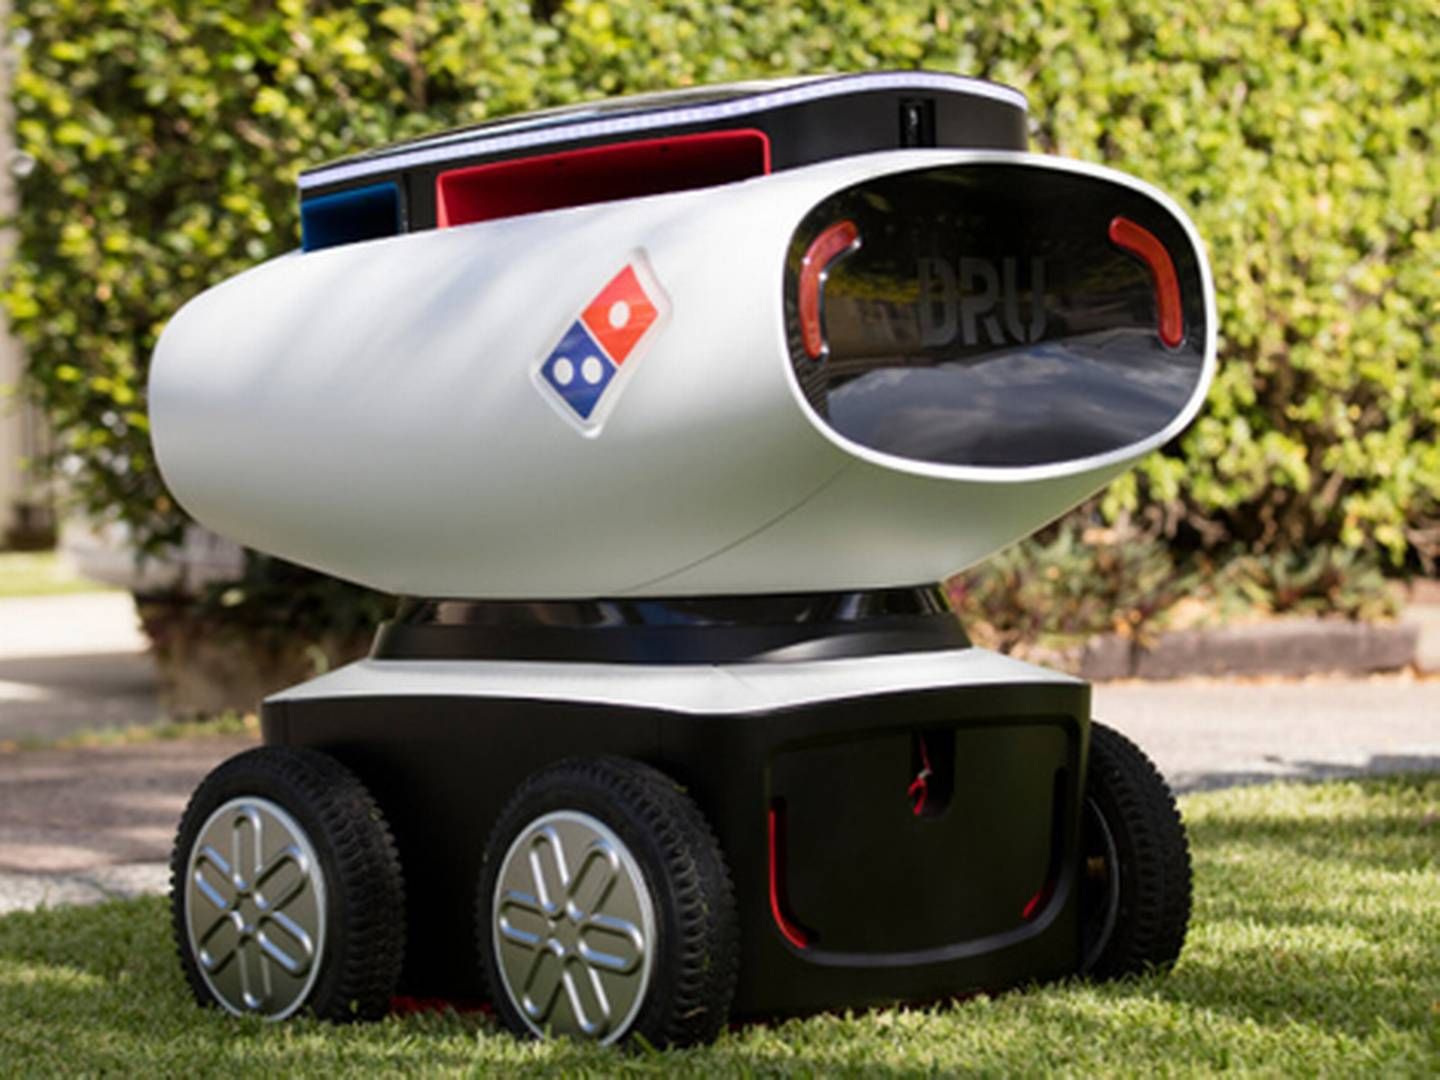 Domino's lancerede i 2016 en selvkørende pizzarobot. Det kan måske blive fremtiden i Danmark også. | Foto: Domino's